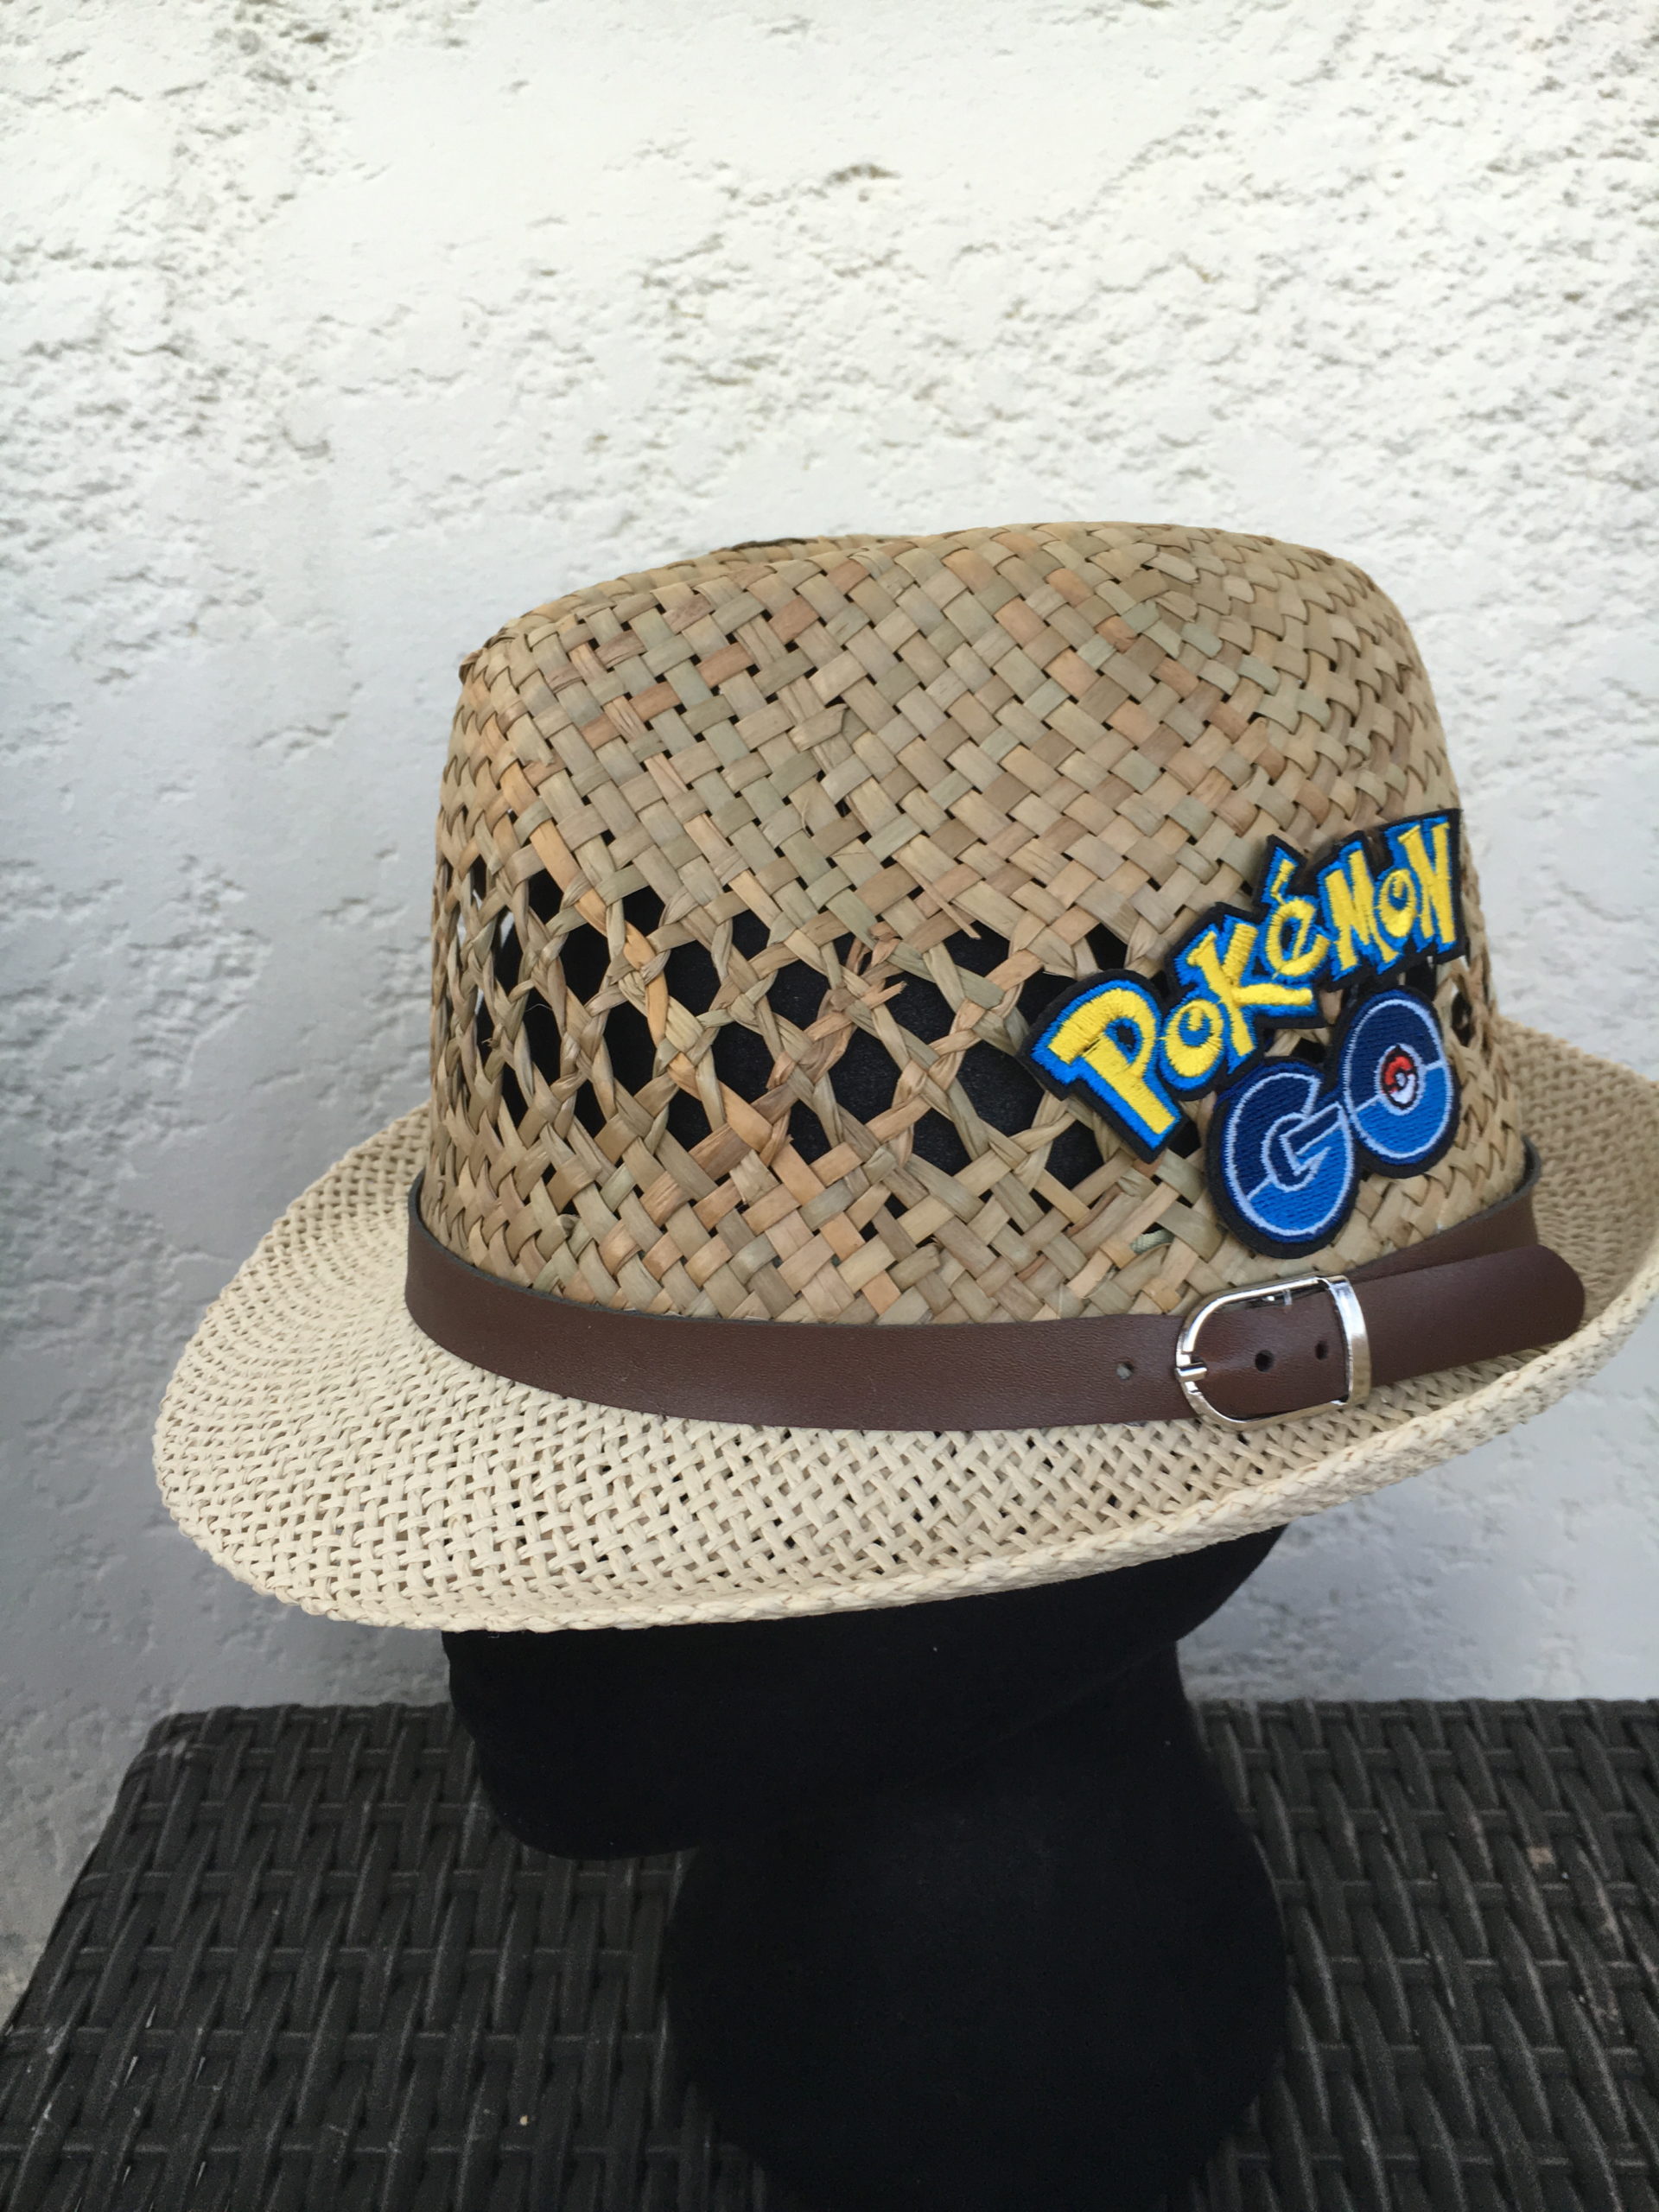 Adult hat pokemon go